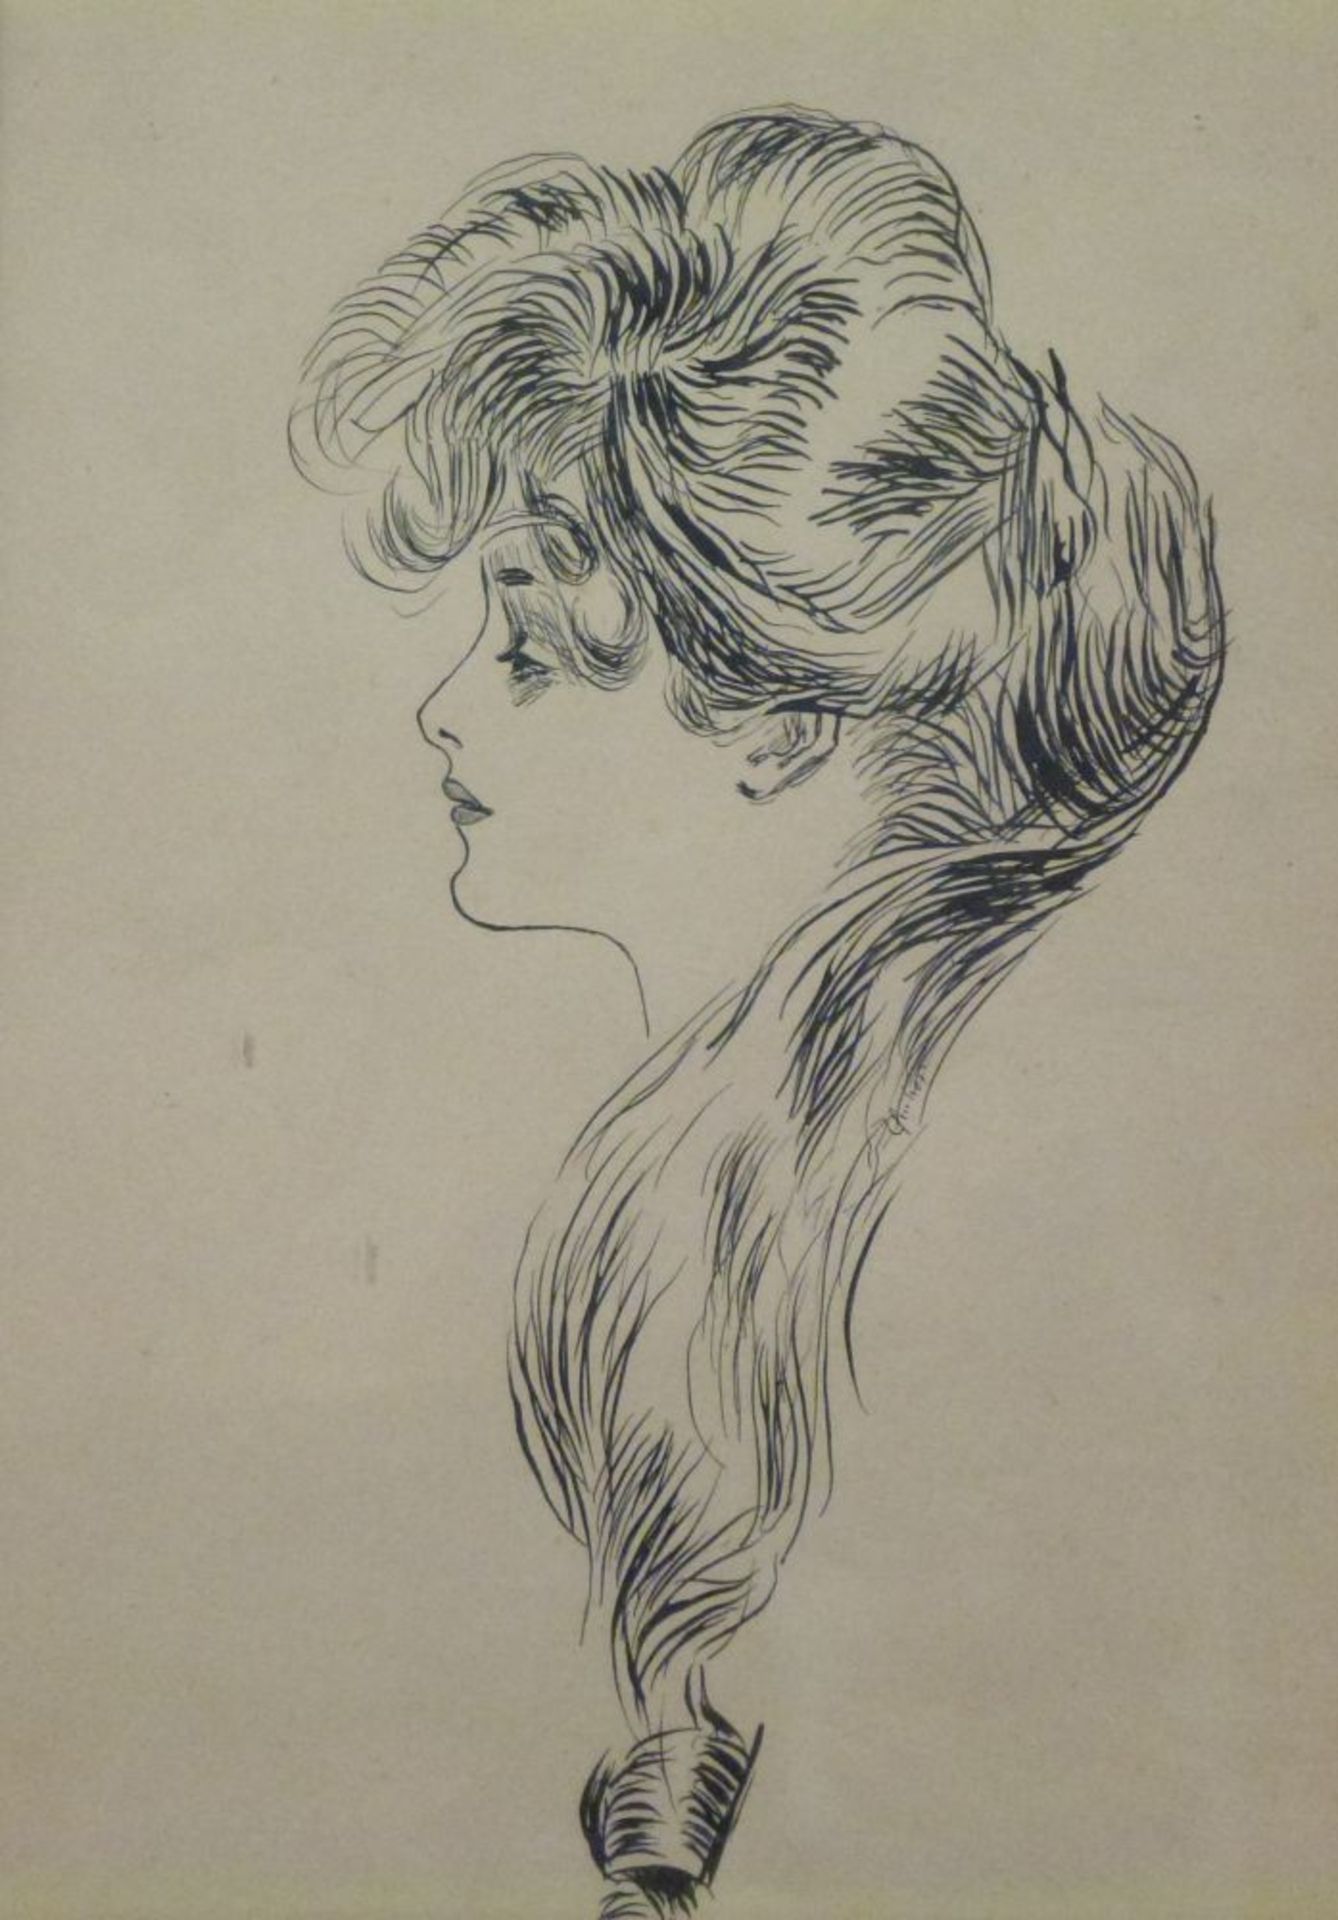 Portrait und Aktstudie Profil einer langhaarigen jungen Fraubez. Brooklyn 1905/06; Rückenakt einer - Image 4 of 5